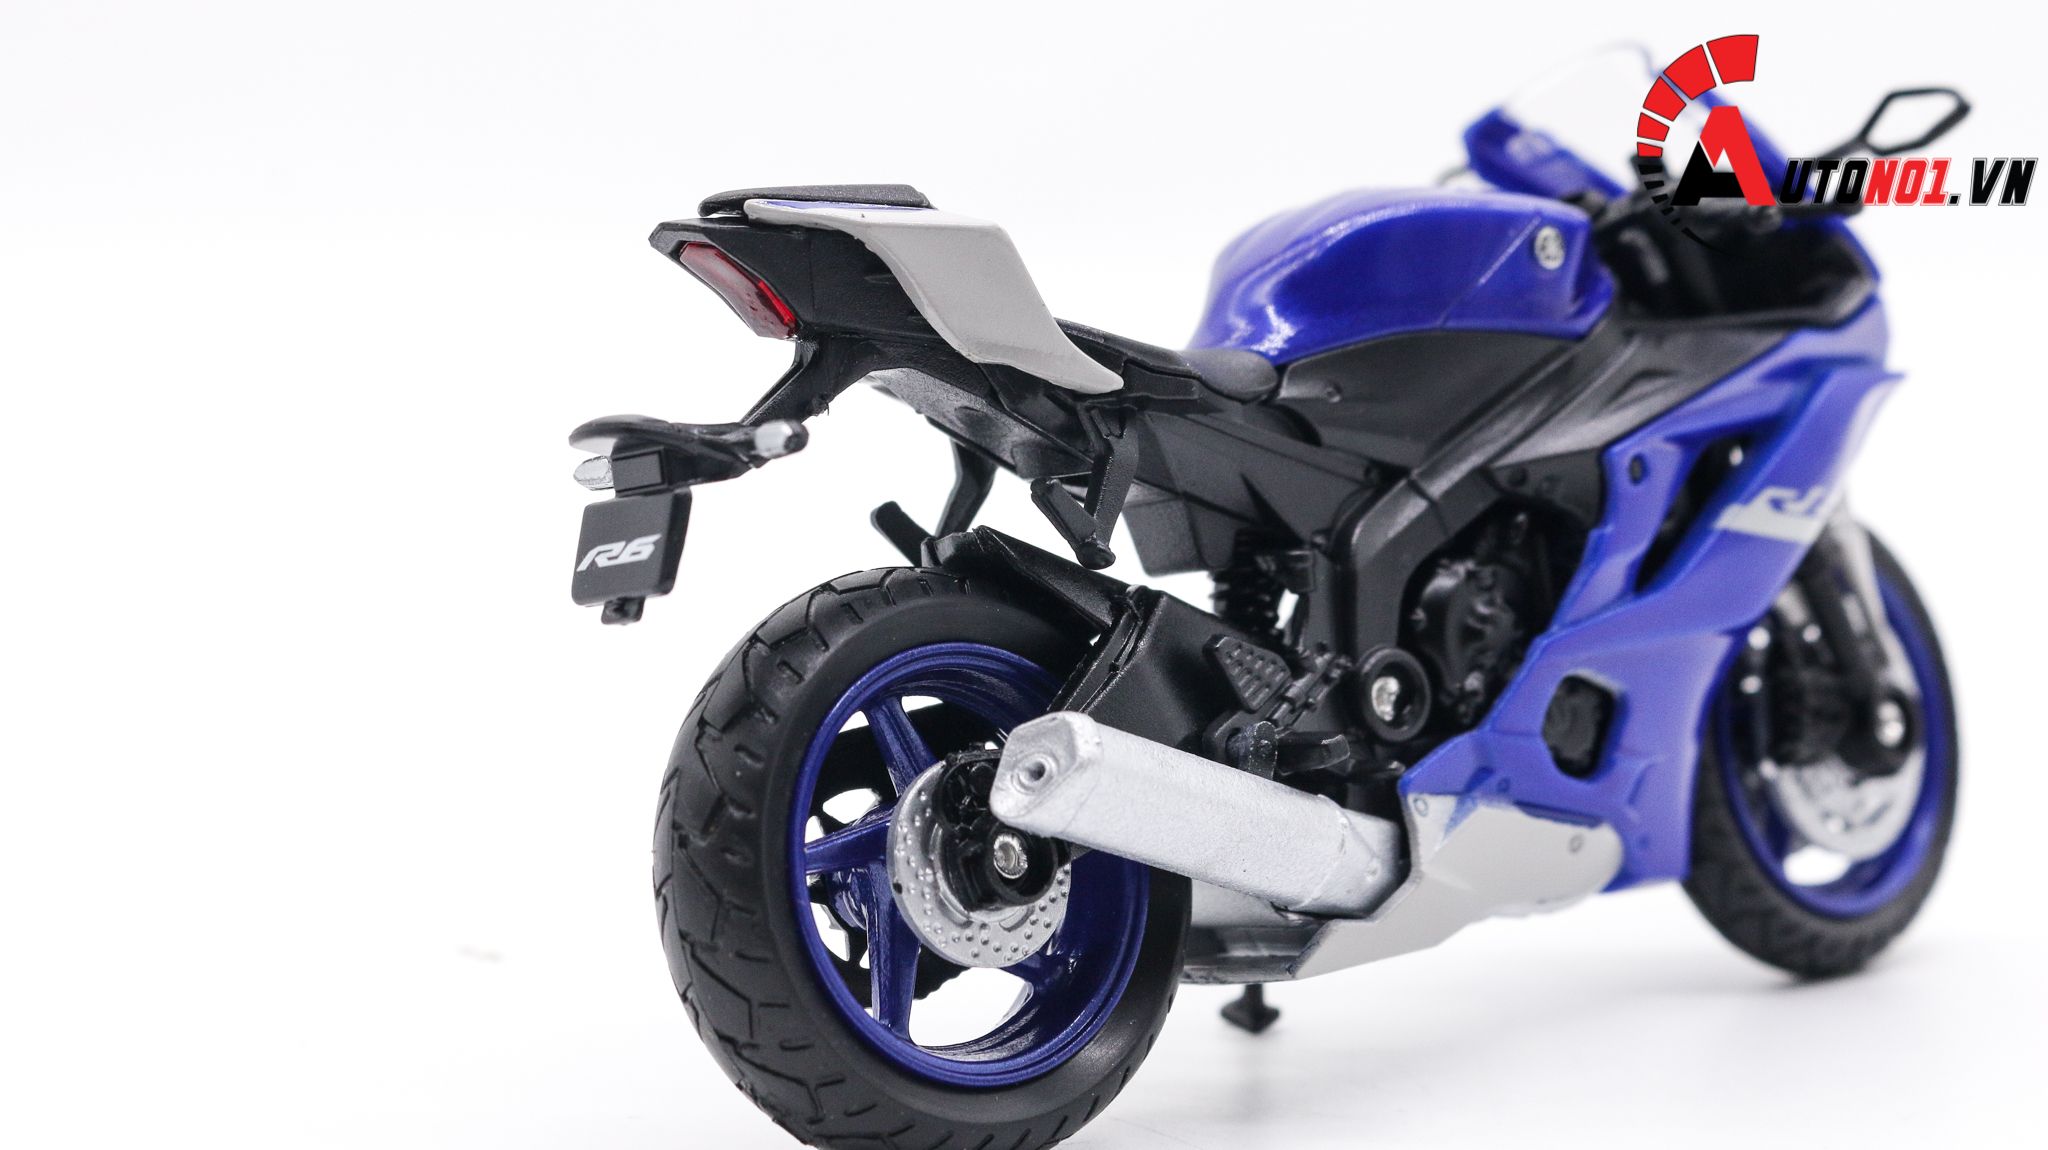  Mô hình xe Yamaha yzr r6 blue 1:18 Welly 7814 